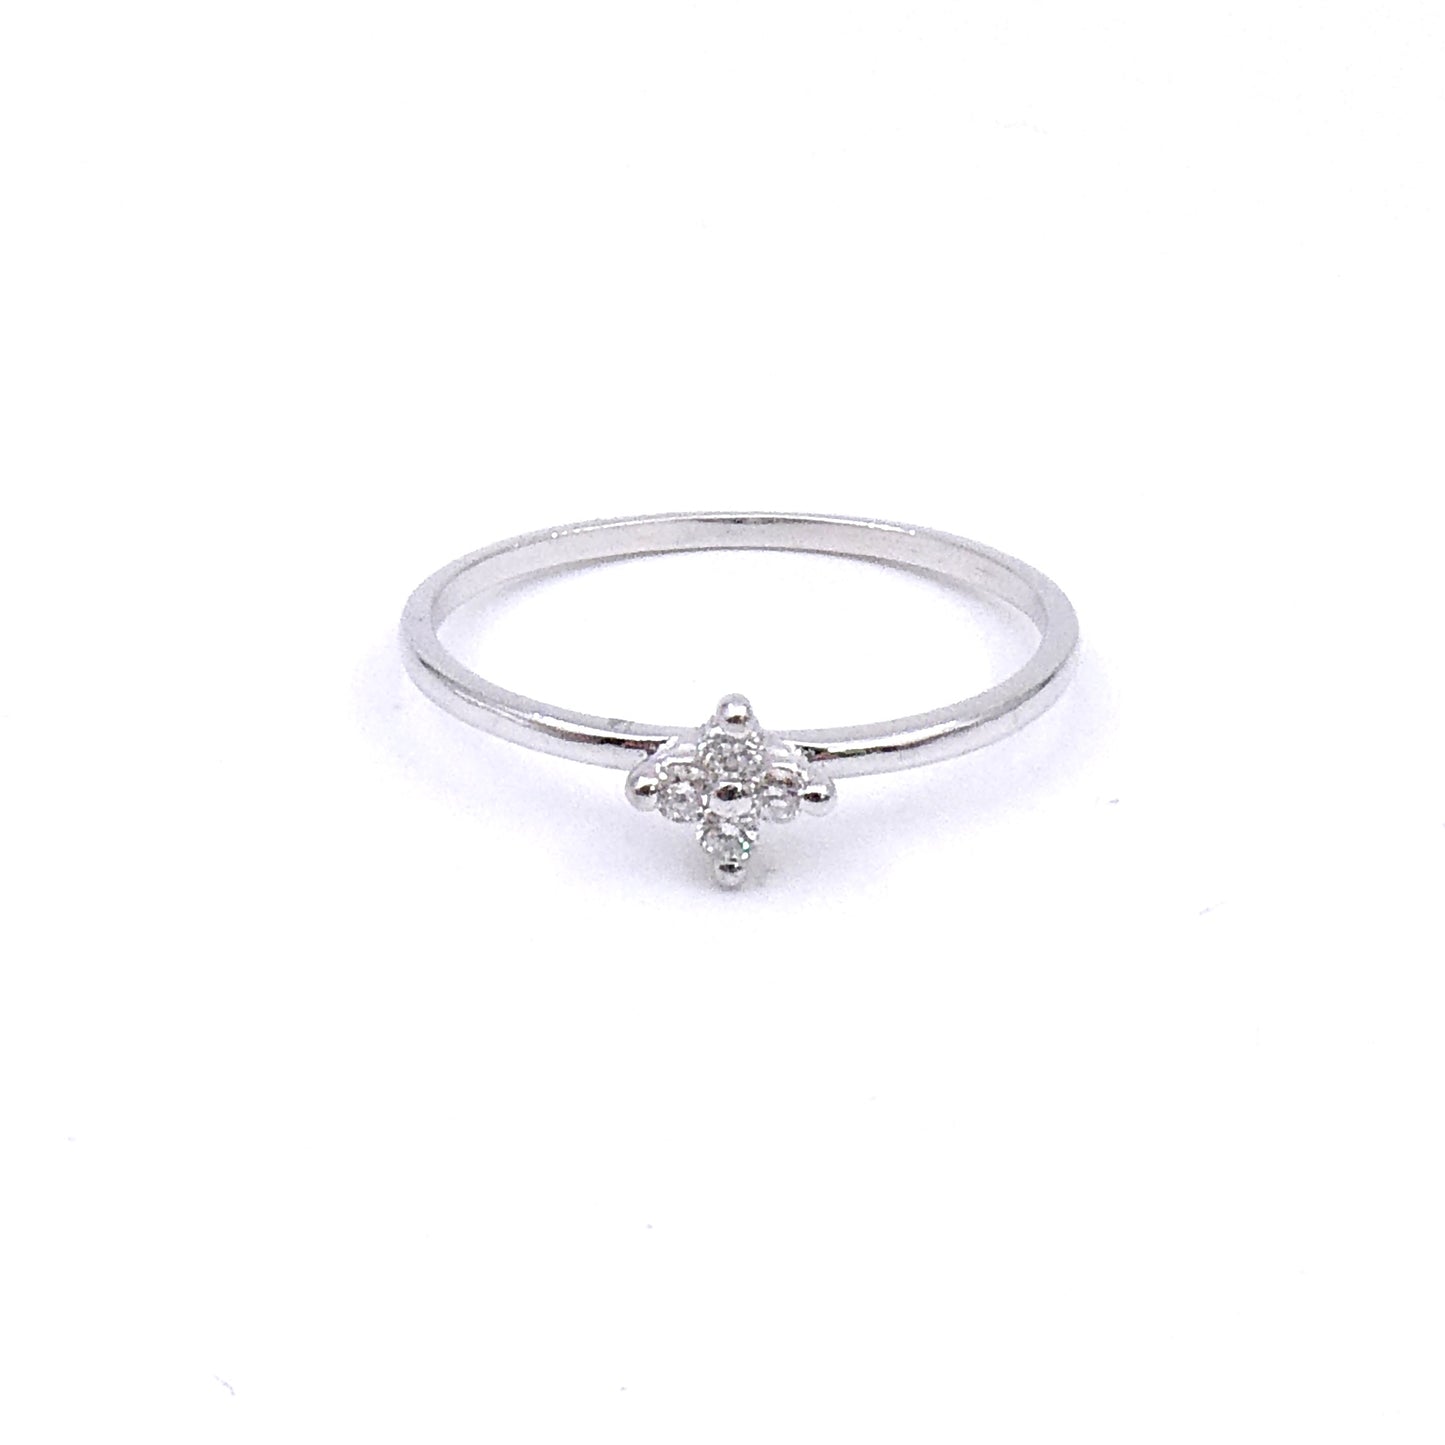 A diamond flower ring in 18kt white gold.